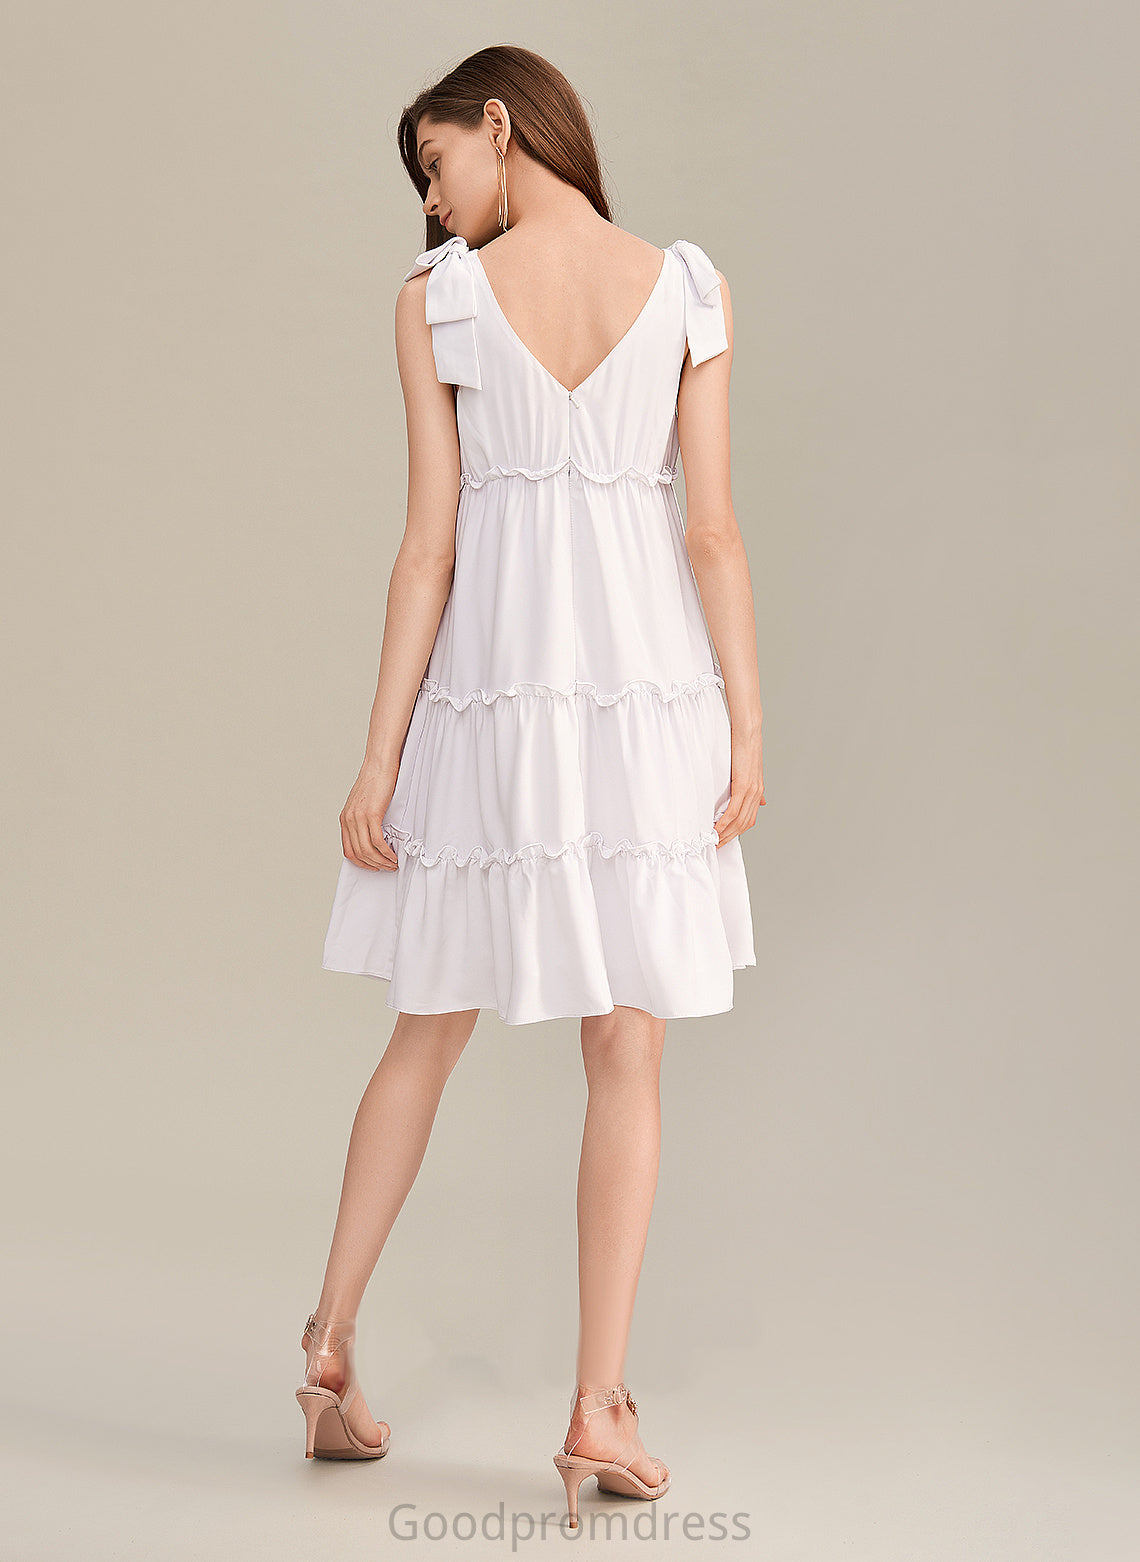 Sierra Formal Dresses V-Neck A-line Dresses